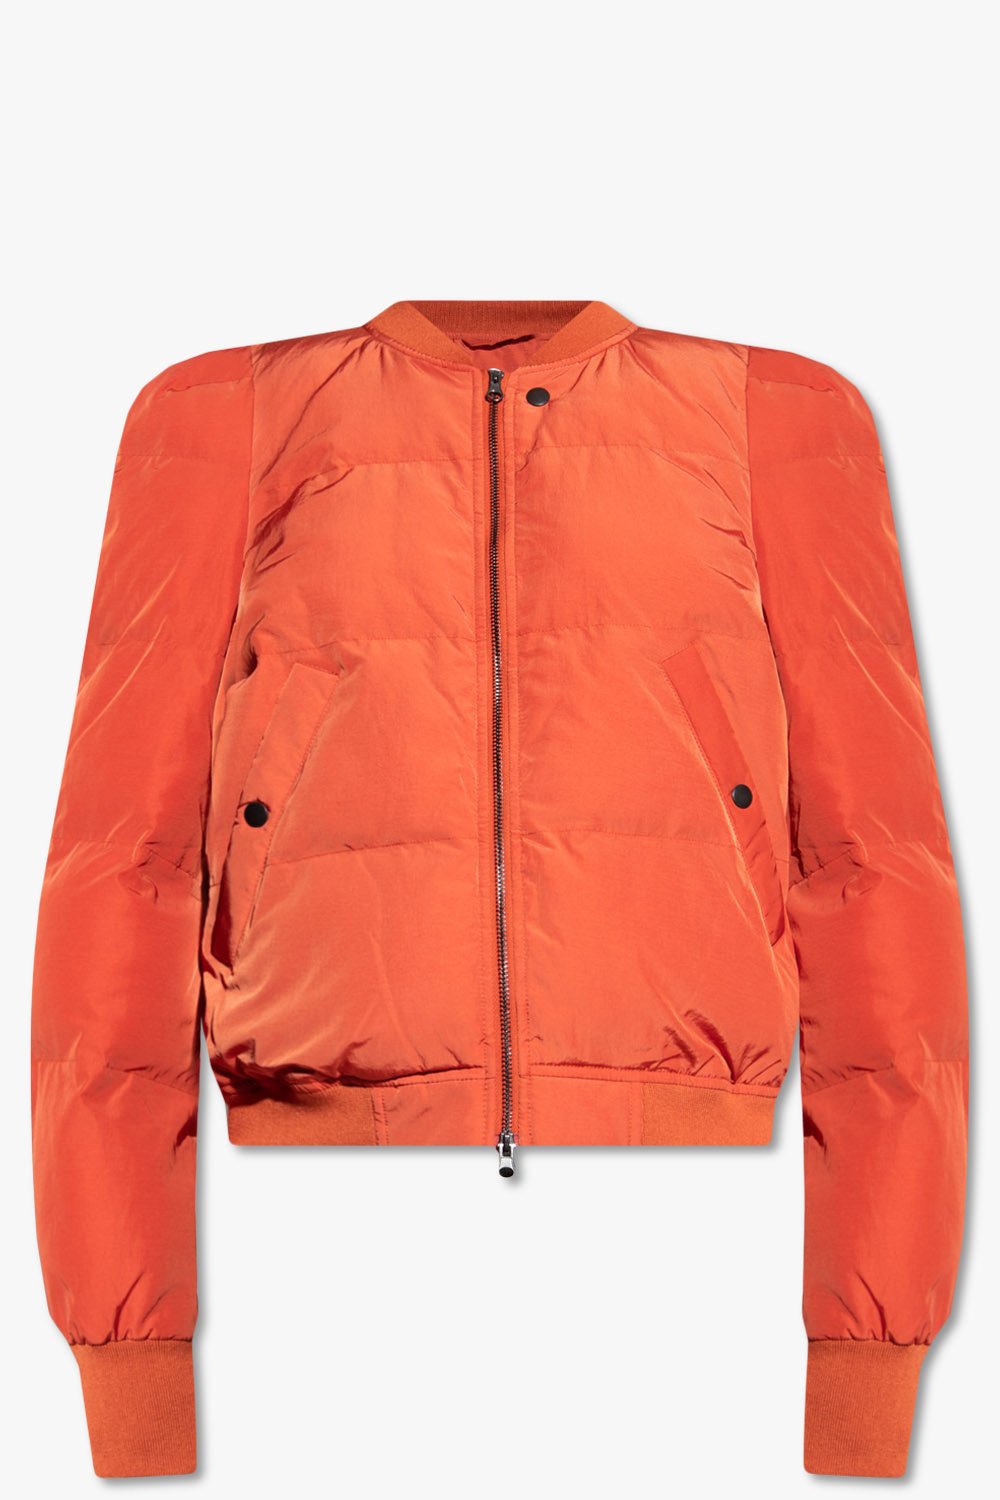 Marant Etoile ‘Cody’ insulated jacket